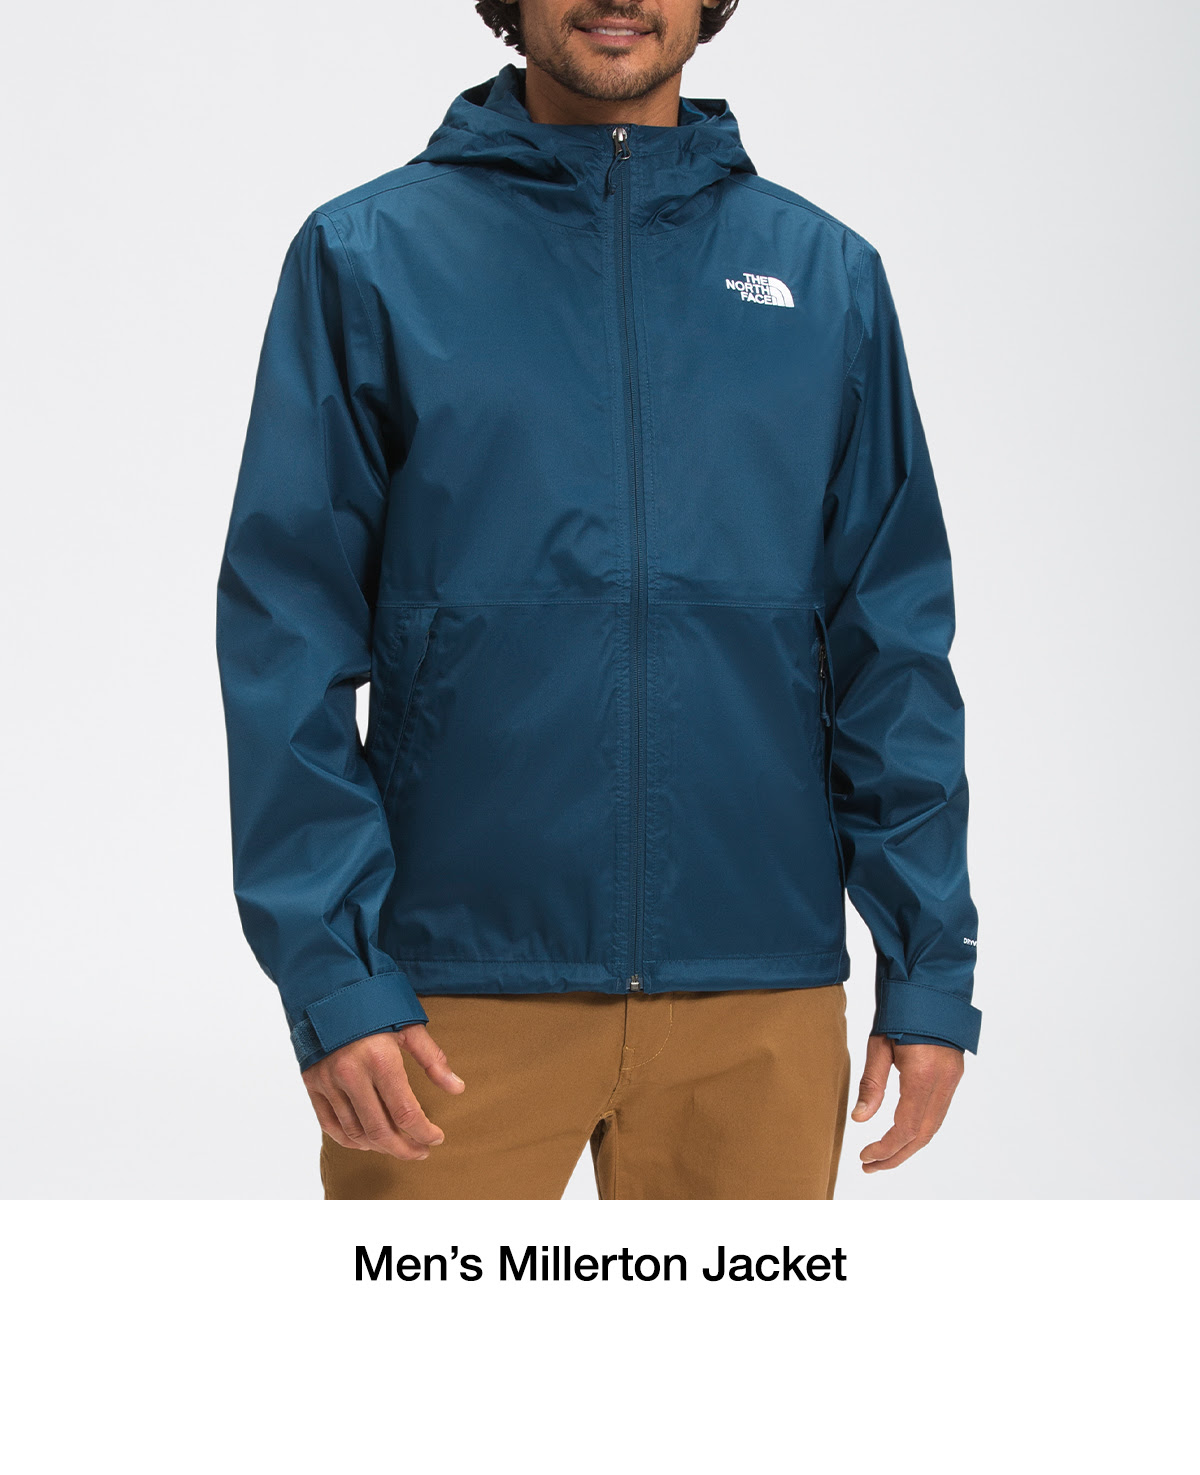 Men's Millerton Jacket